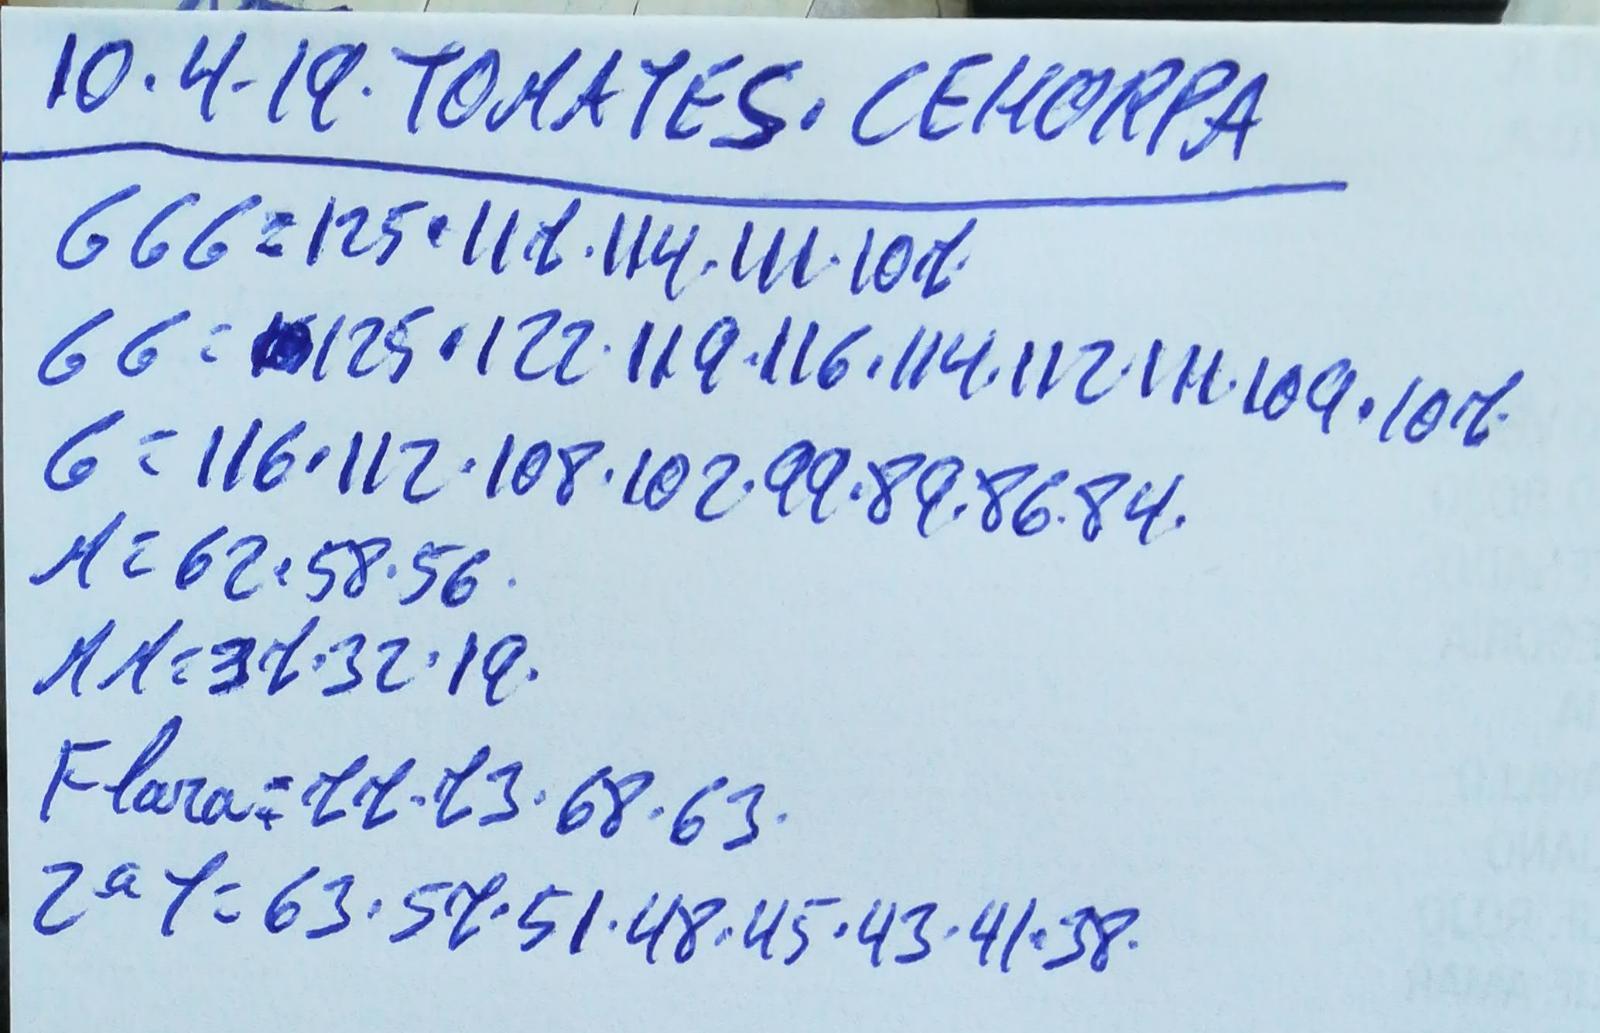 Subasta hortofrutícola Costa de Almería Cehorpa Tomates 10 de Abril 2019